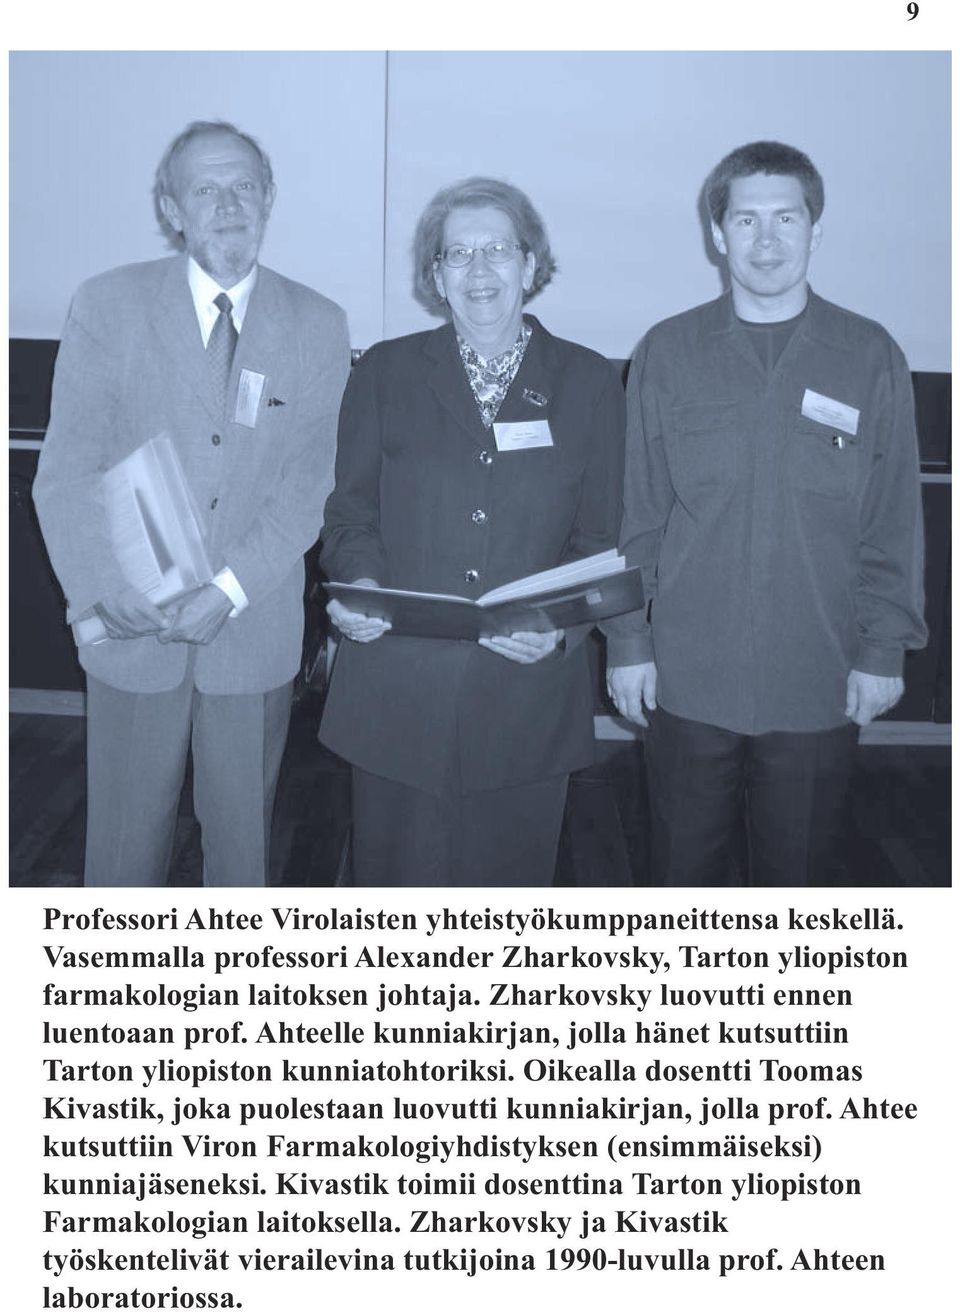 Ahteelle kunniakirjan, jolla hänet kutsuttiin Tarton yliopiston kunniatohtoriksi.